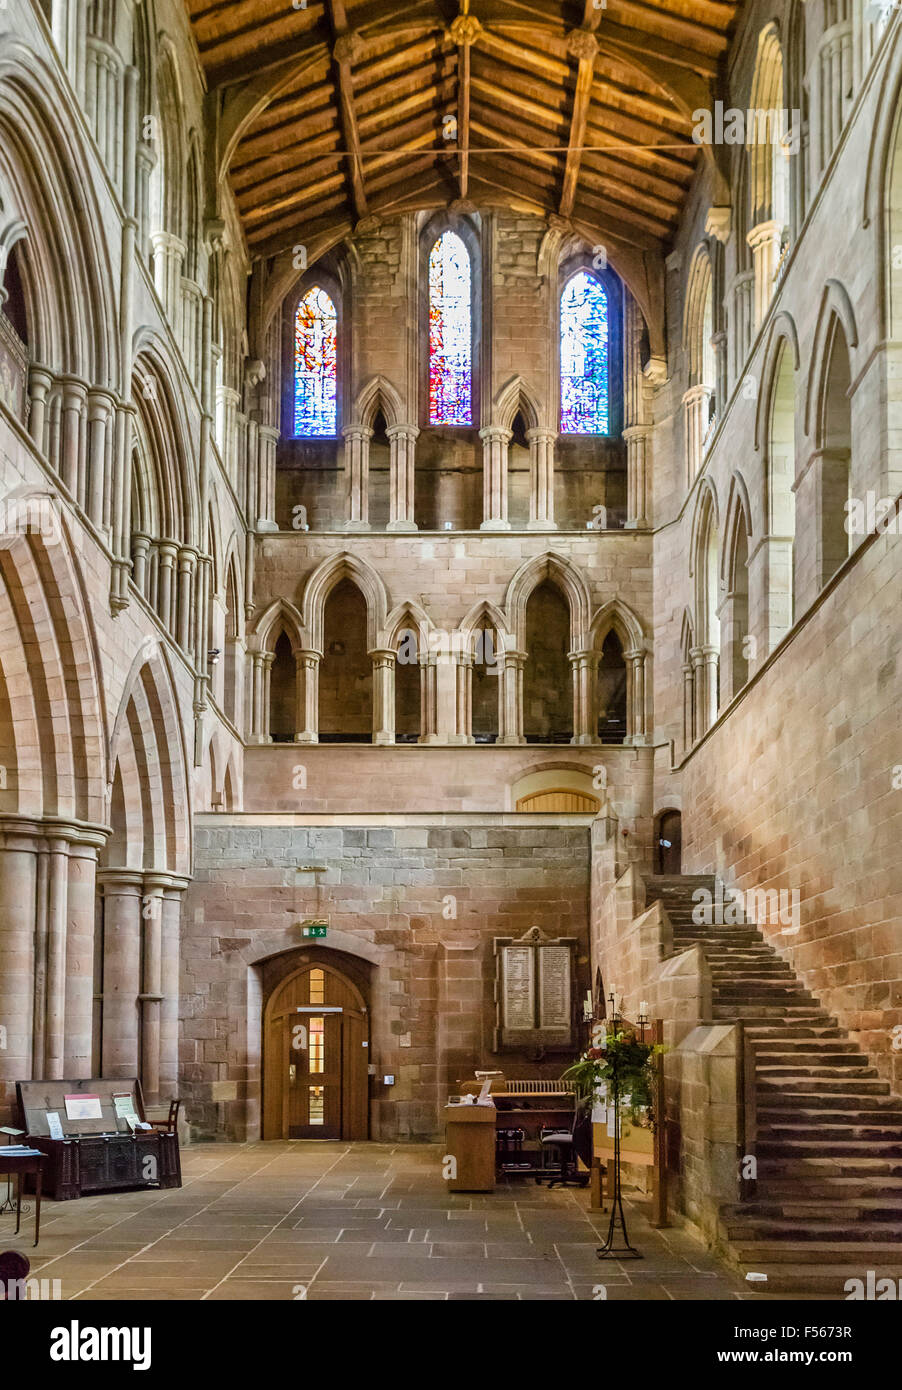 Le transept sud avec l'escalier de nuit vers la droite, abbaye de Hexham, Hexham, Northumberland, England, UK Banque D'Images